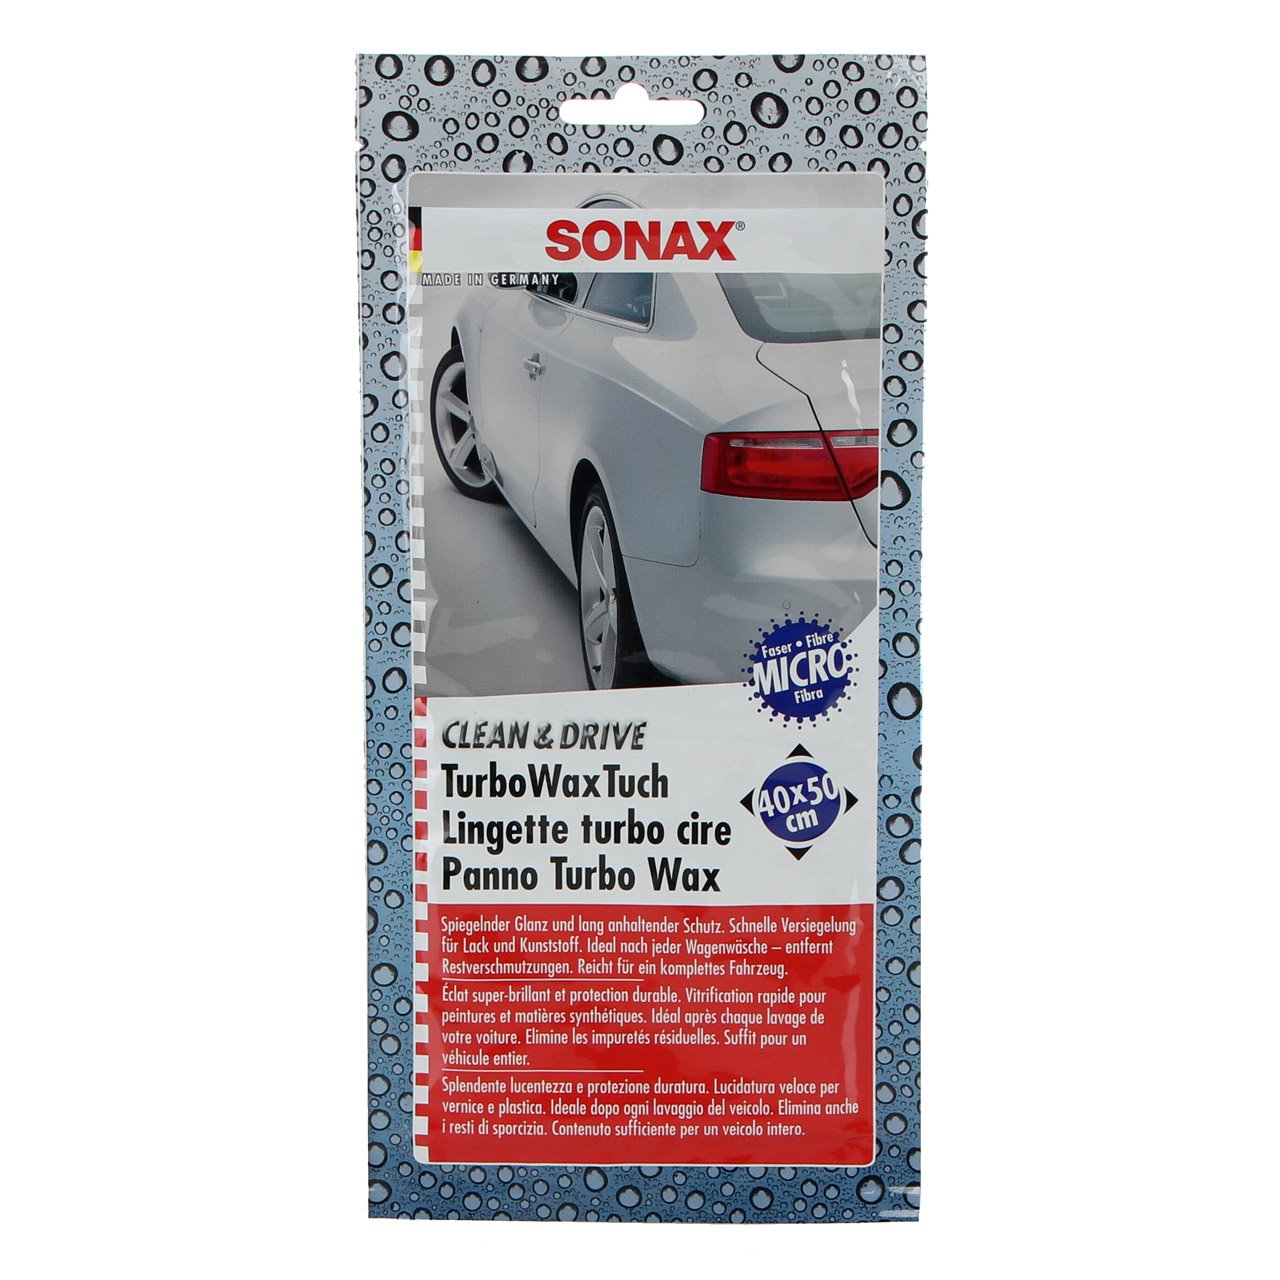 SONAX 414000 TurboWaxTuch CLEAN & DRIVE Wachstuch Microfaser Tuch 40x50cm